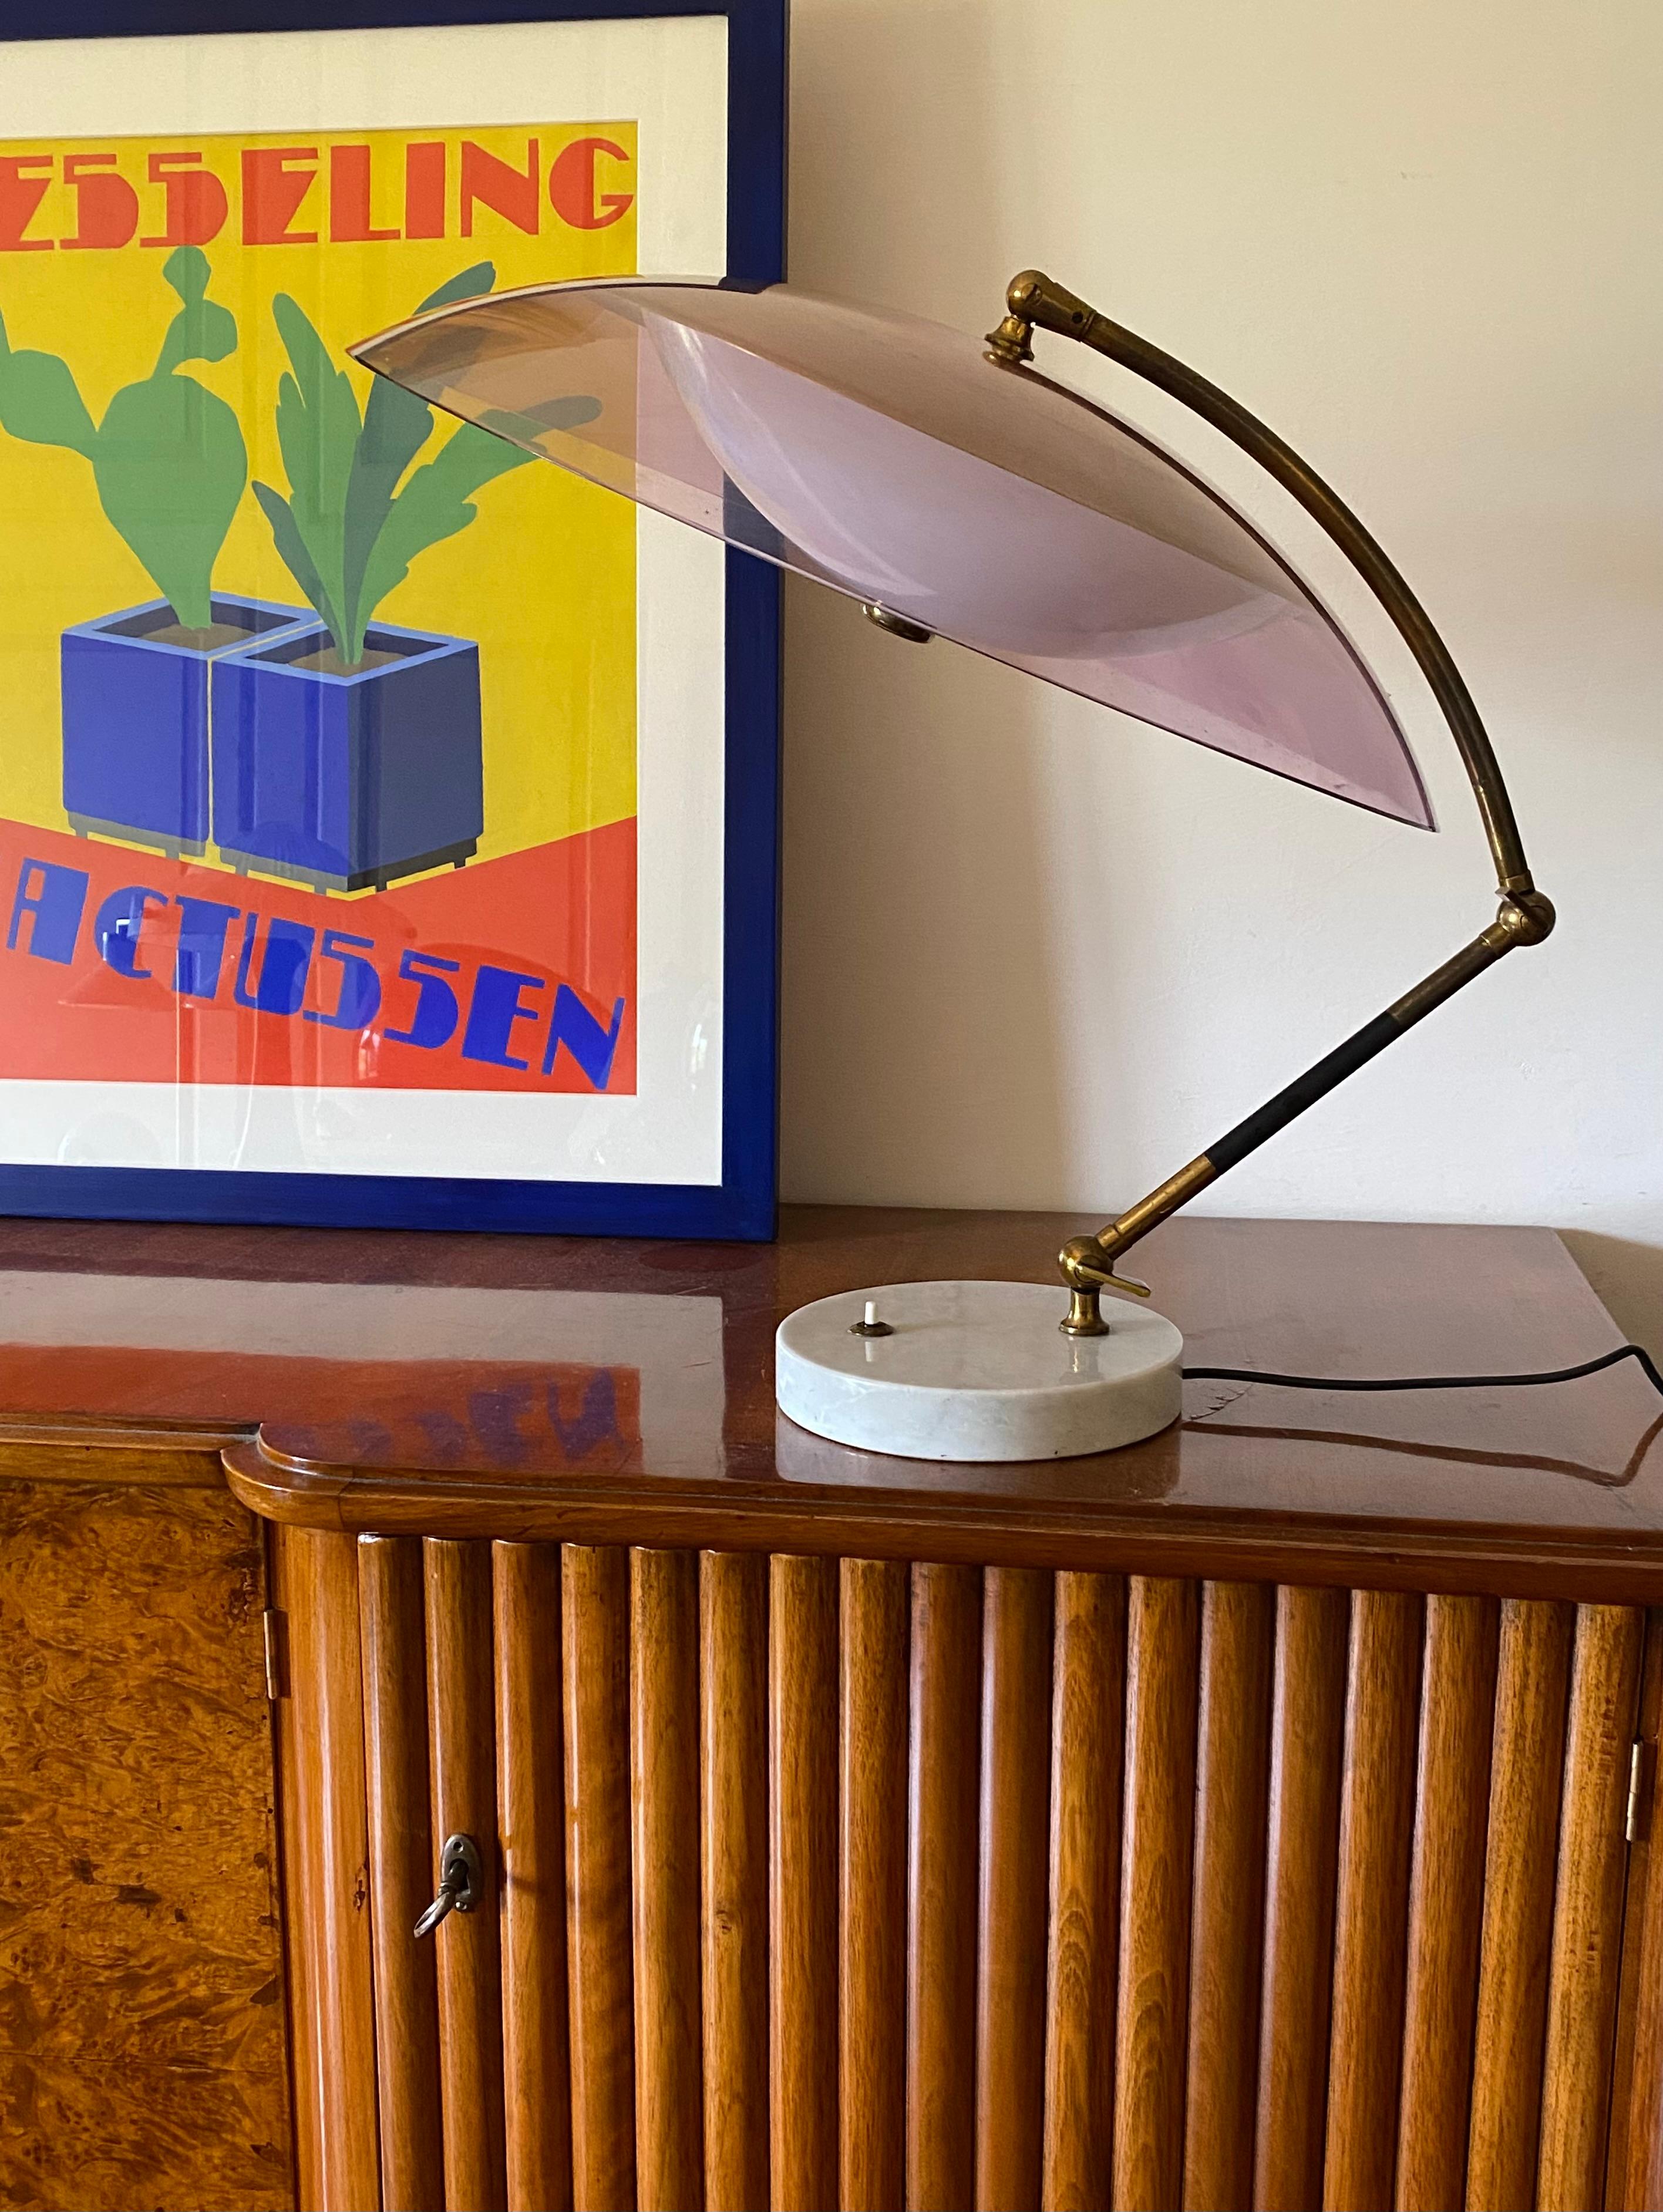 Mod. Orleans-Kuppeltischlampe, leicht geräucherter violetter Plexiglas-Kuppelschirm.

Stilux, Mailand, Italien, 1955

Carrara-Marmor, Messing, Acryl

gelenkarm mit zwei verstellbaren Gelenken.

56 × 51 × 61 cm

Ref: Stilux Mailand